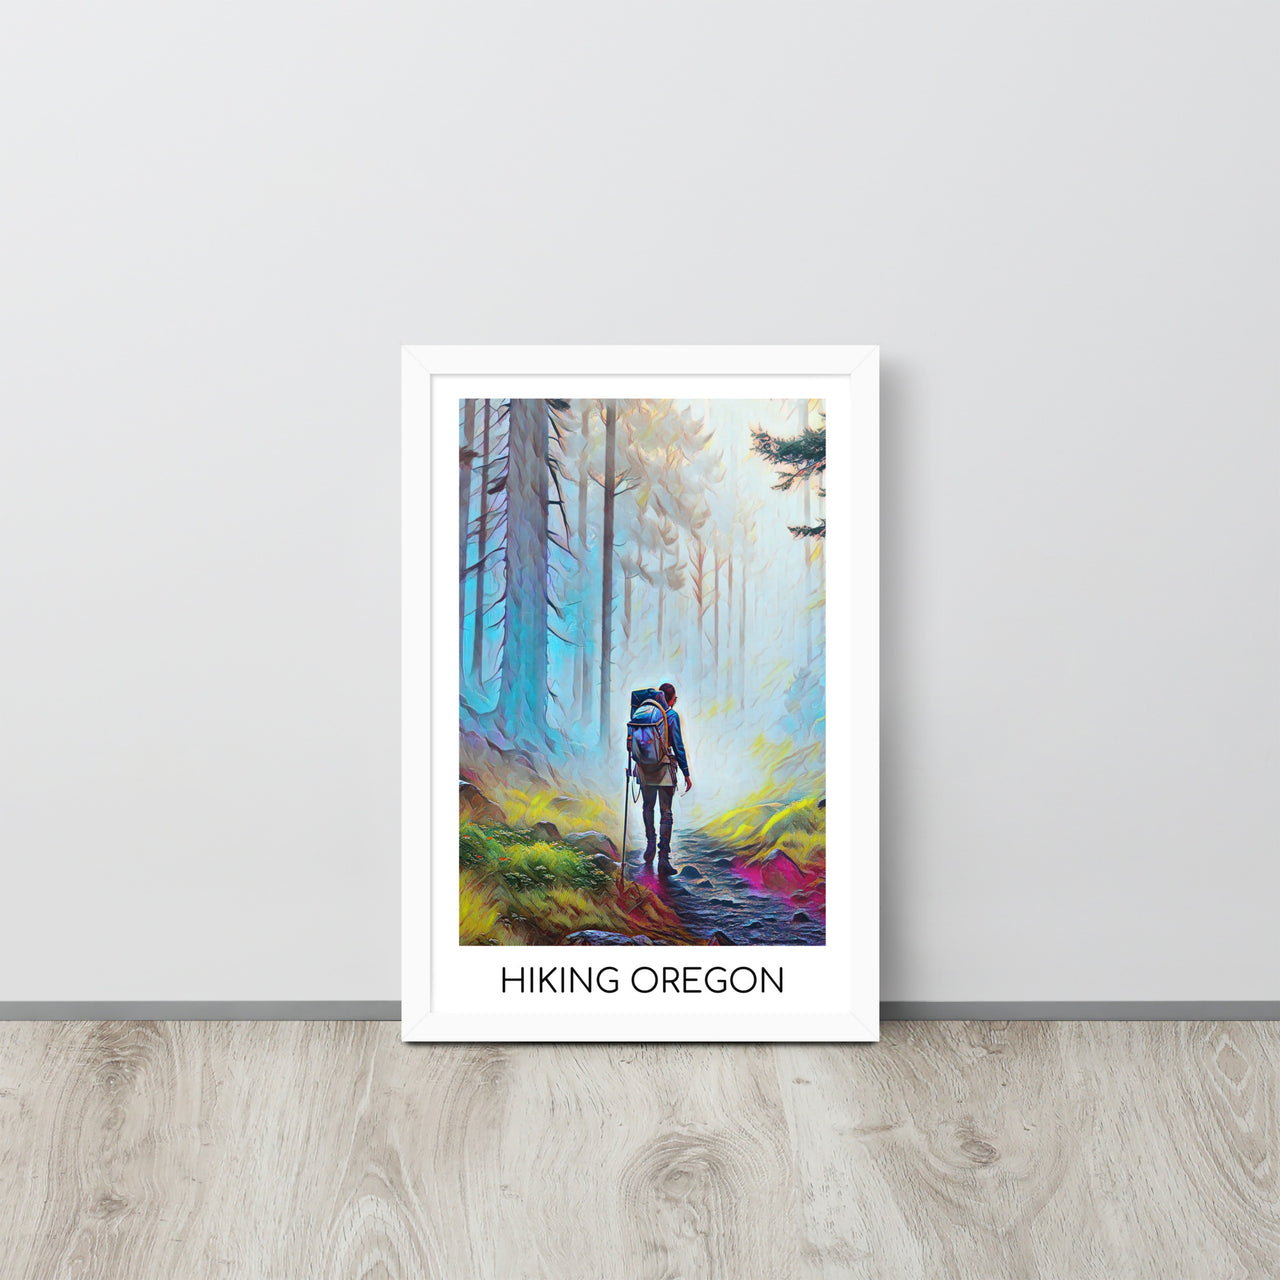 Hiking Oregon - Framed poster